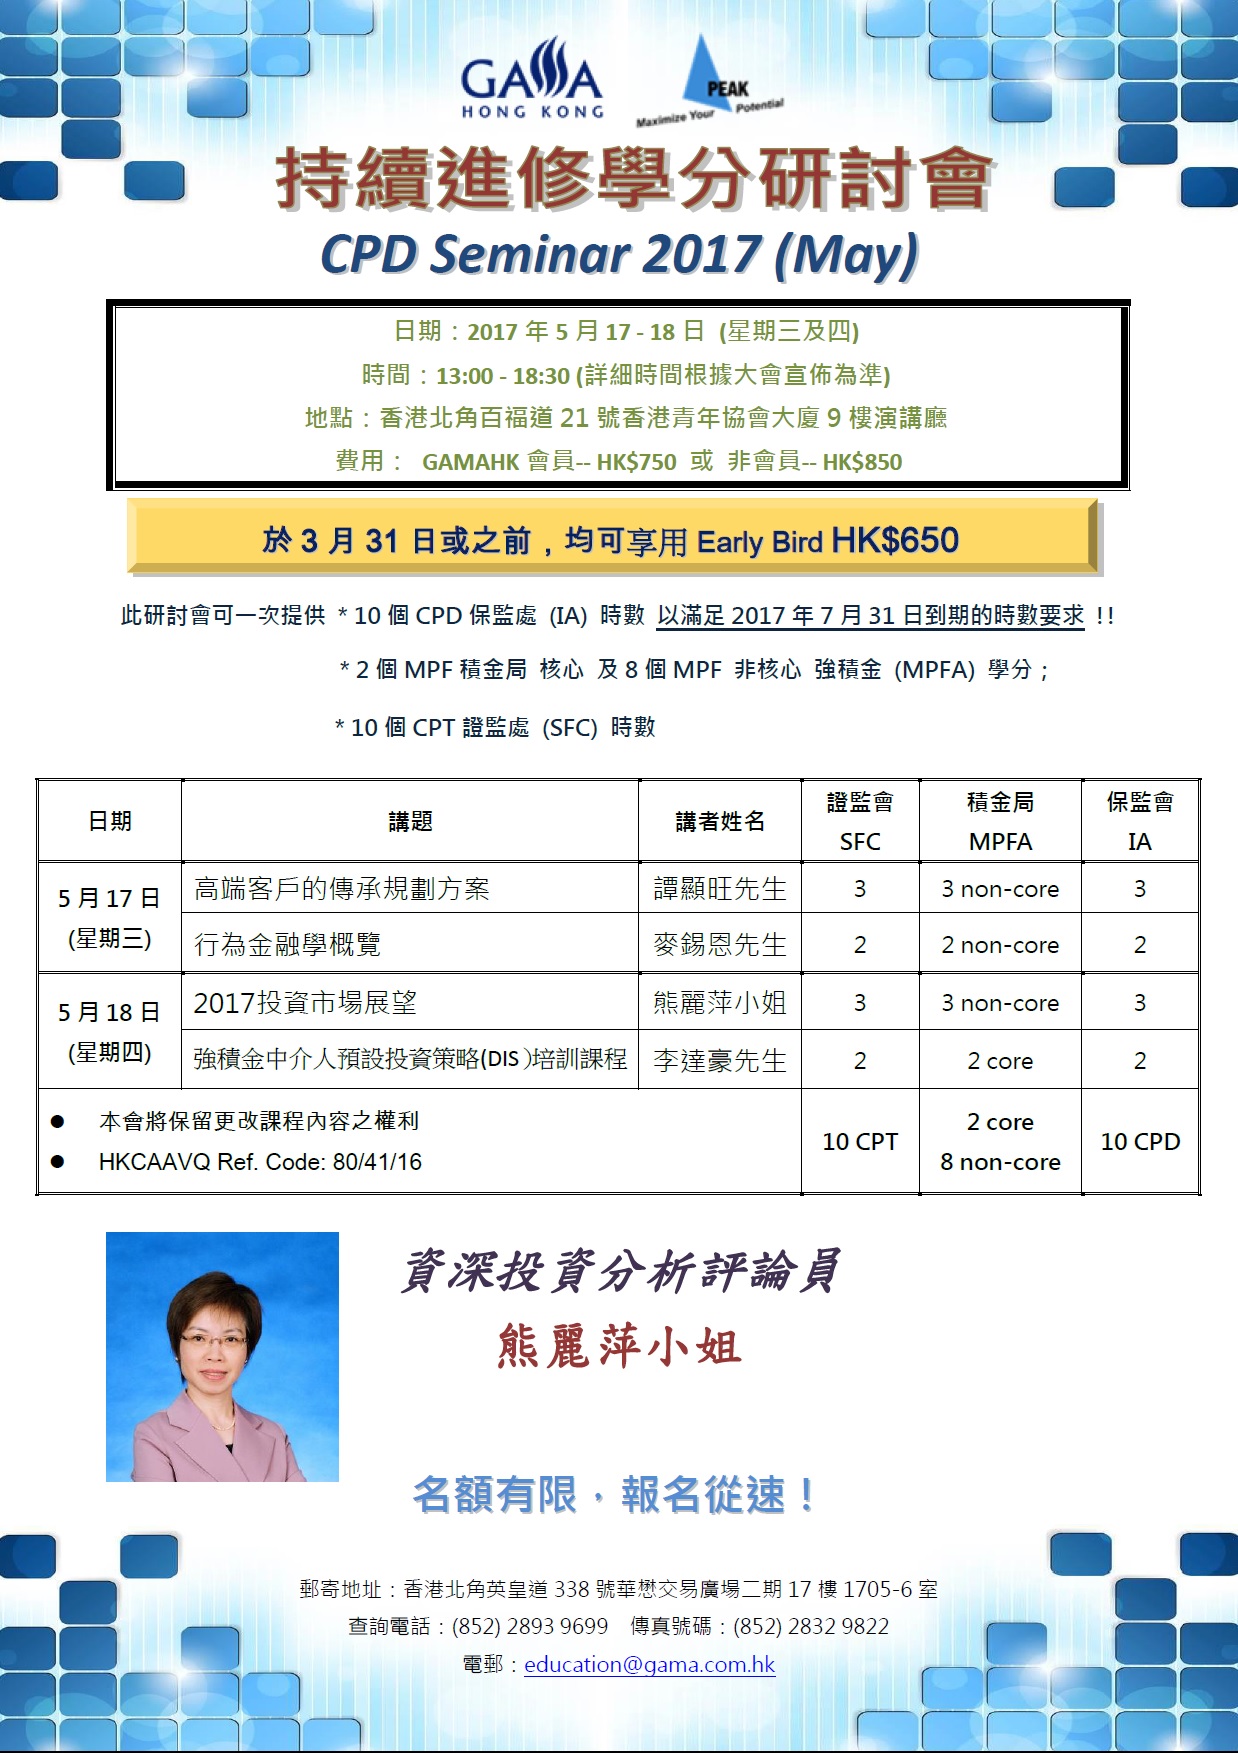 enrollment form (front)